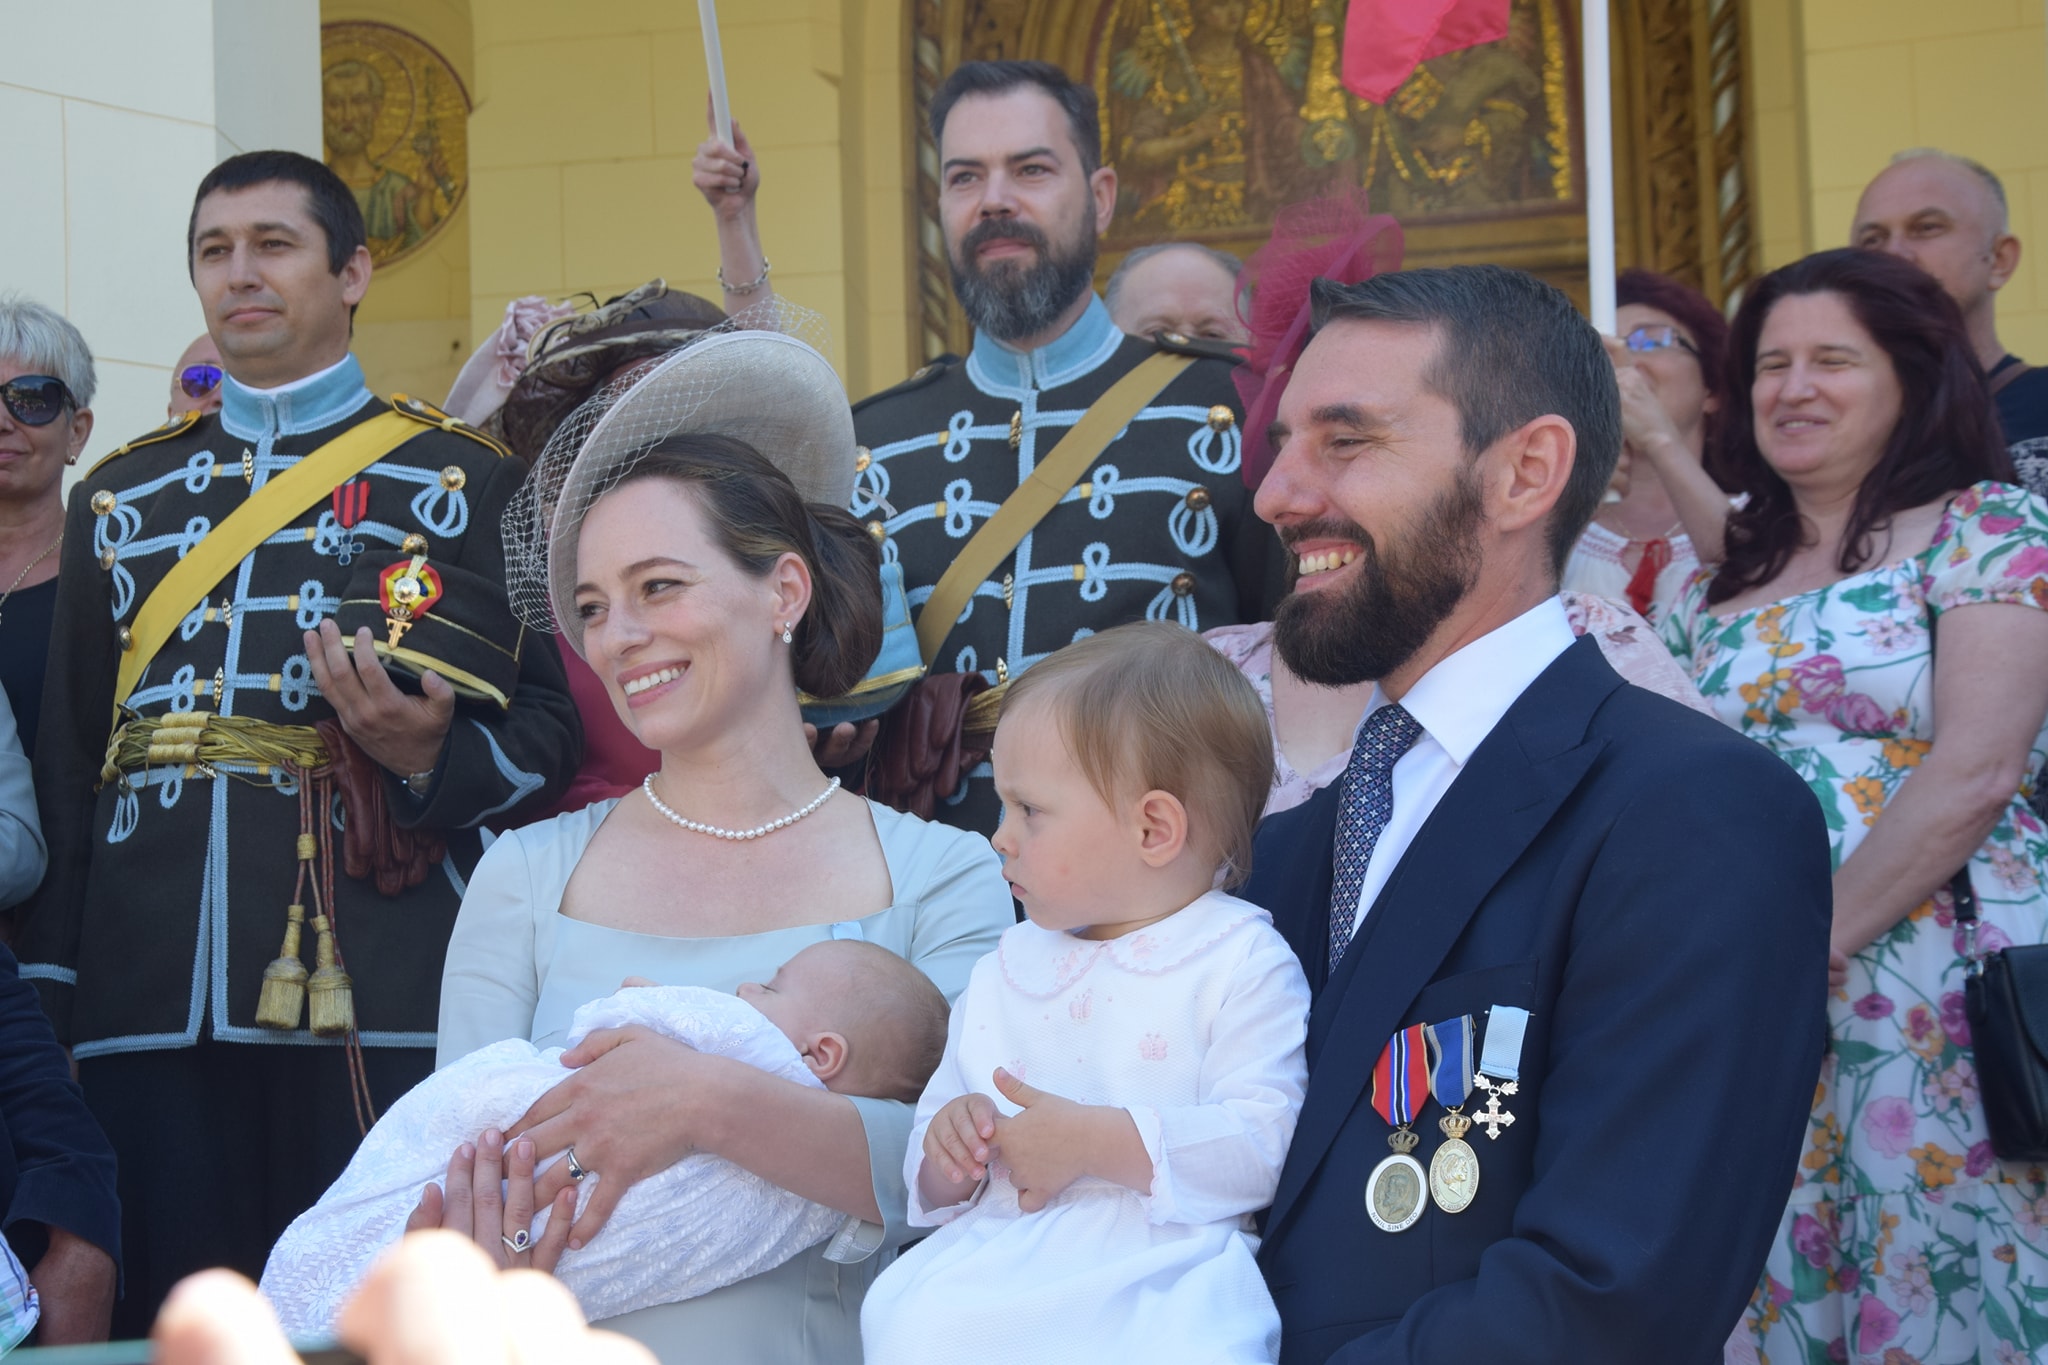 (Foto) Imagini de la botez. Fostul principe Nicolae și-a botezat fiul, la Catedrala Încoronării din Alba Iulia. Copilul poartă numele regelui Mihai 1